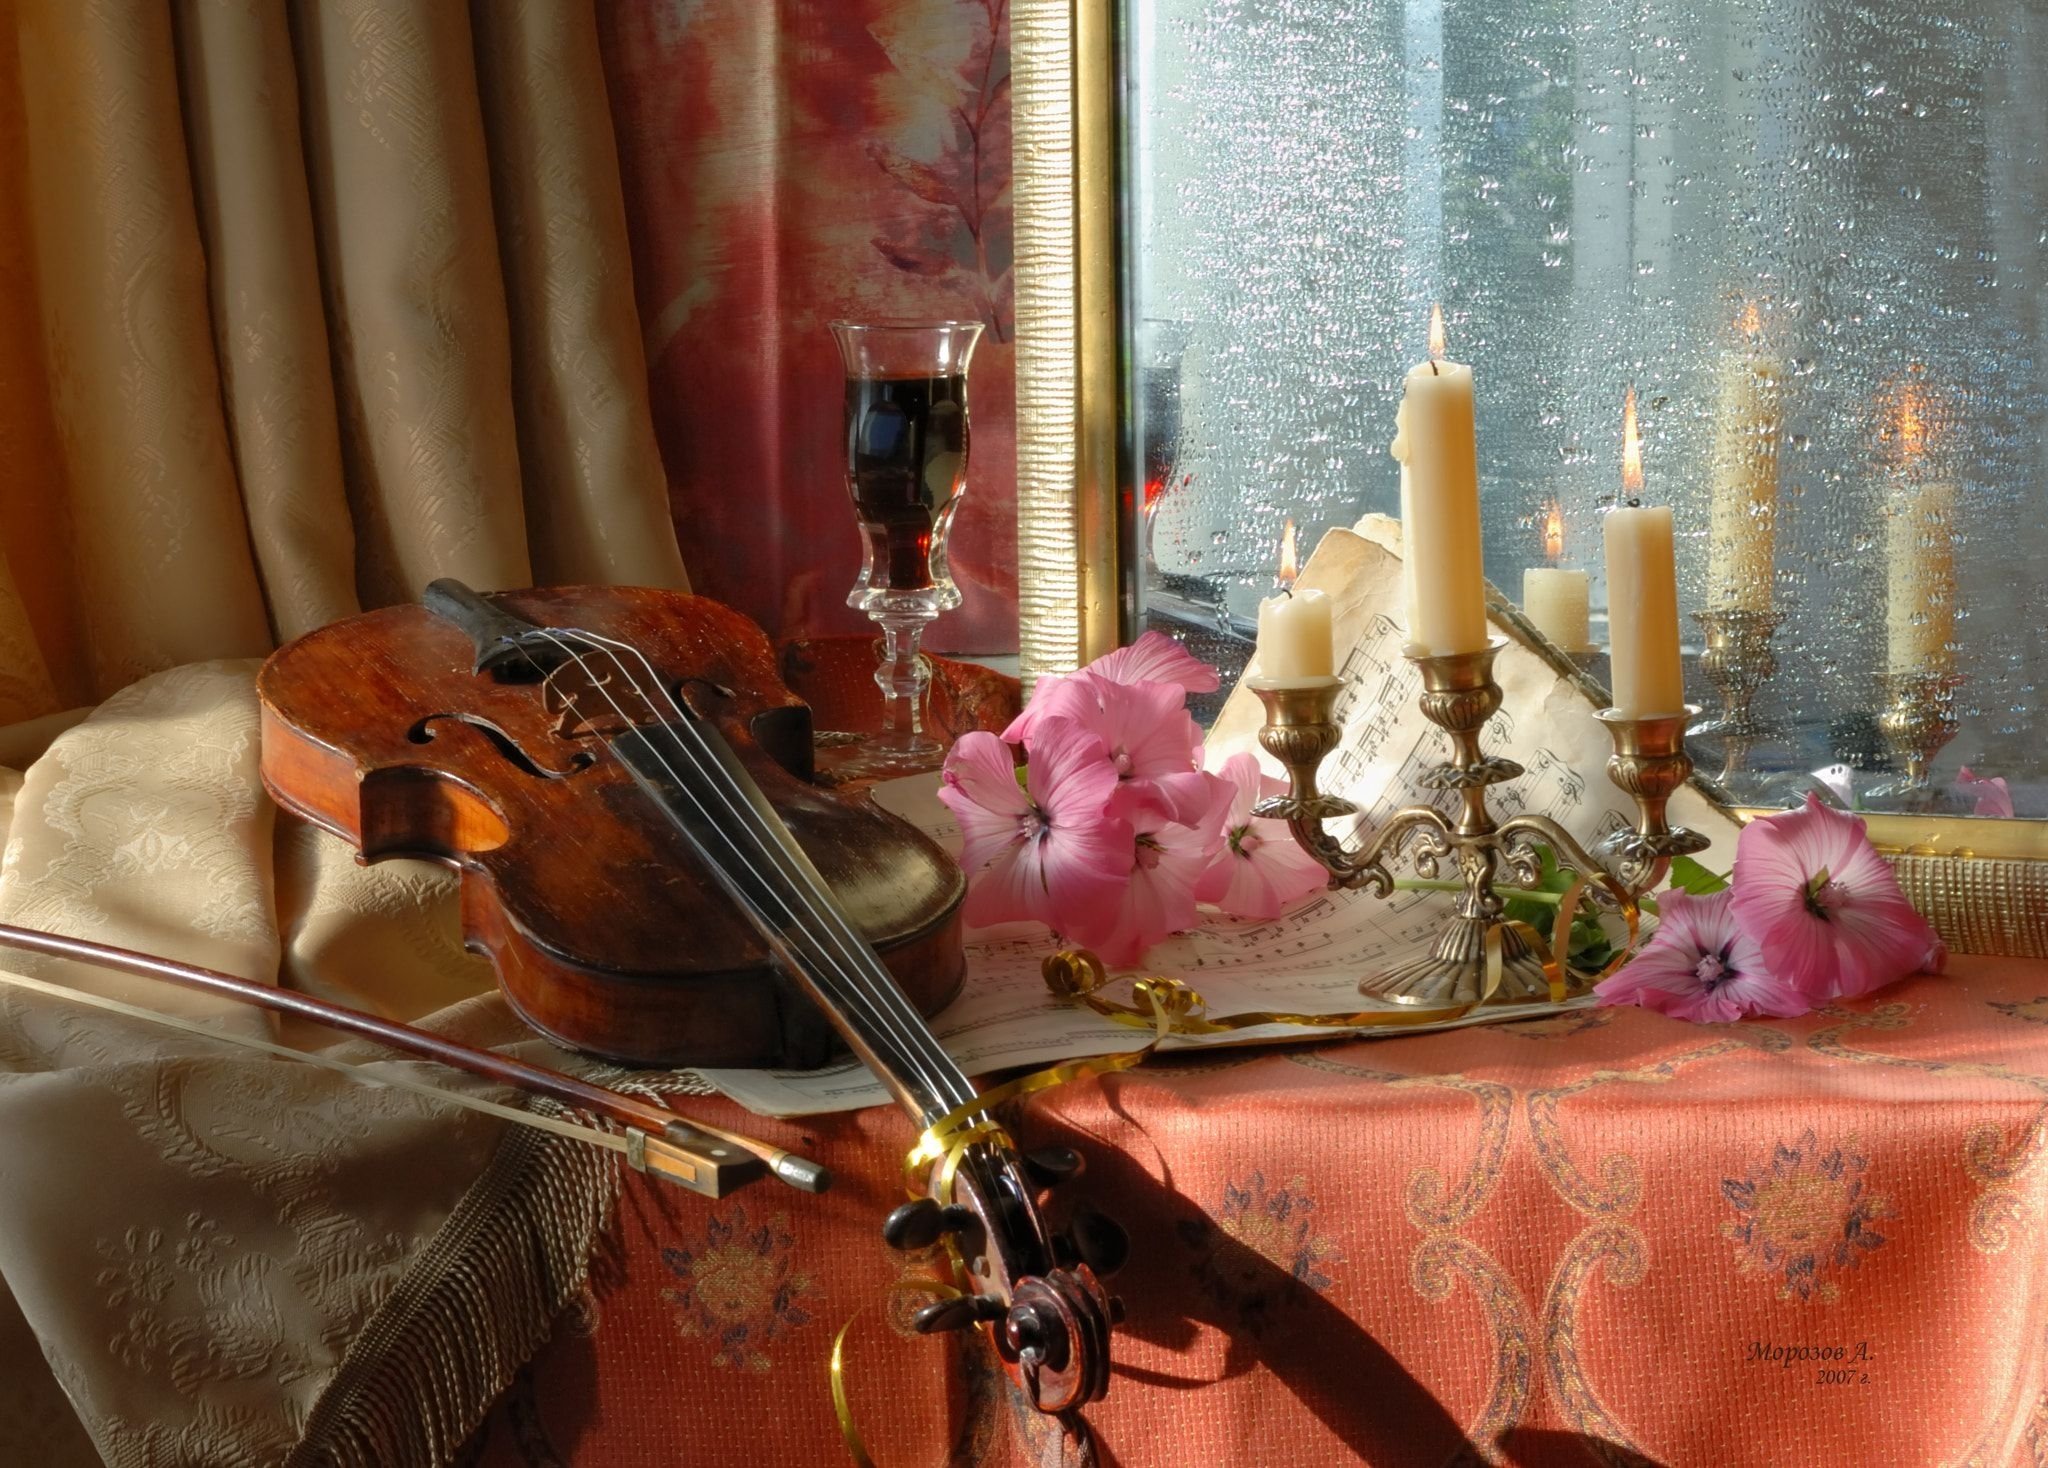 Д романсы. Натюрморт с музыкальными инструментами. Натюрморт со скрипкой. Натюрморт со скрипкой и цветами. Скрипка и цветы.